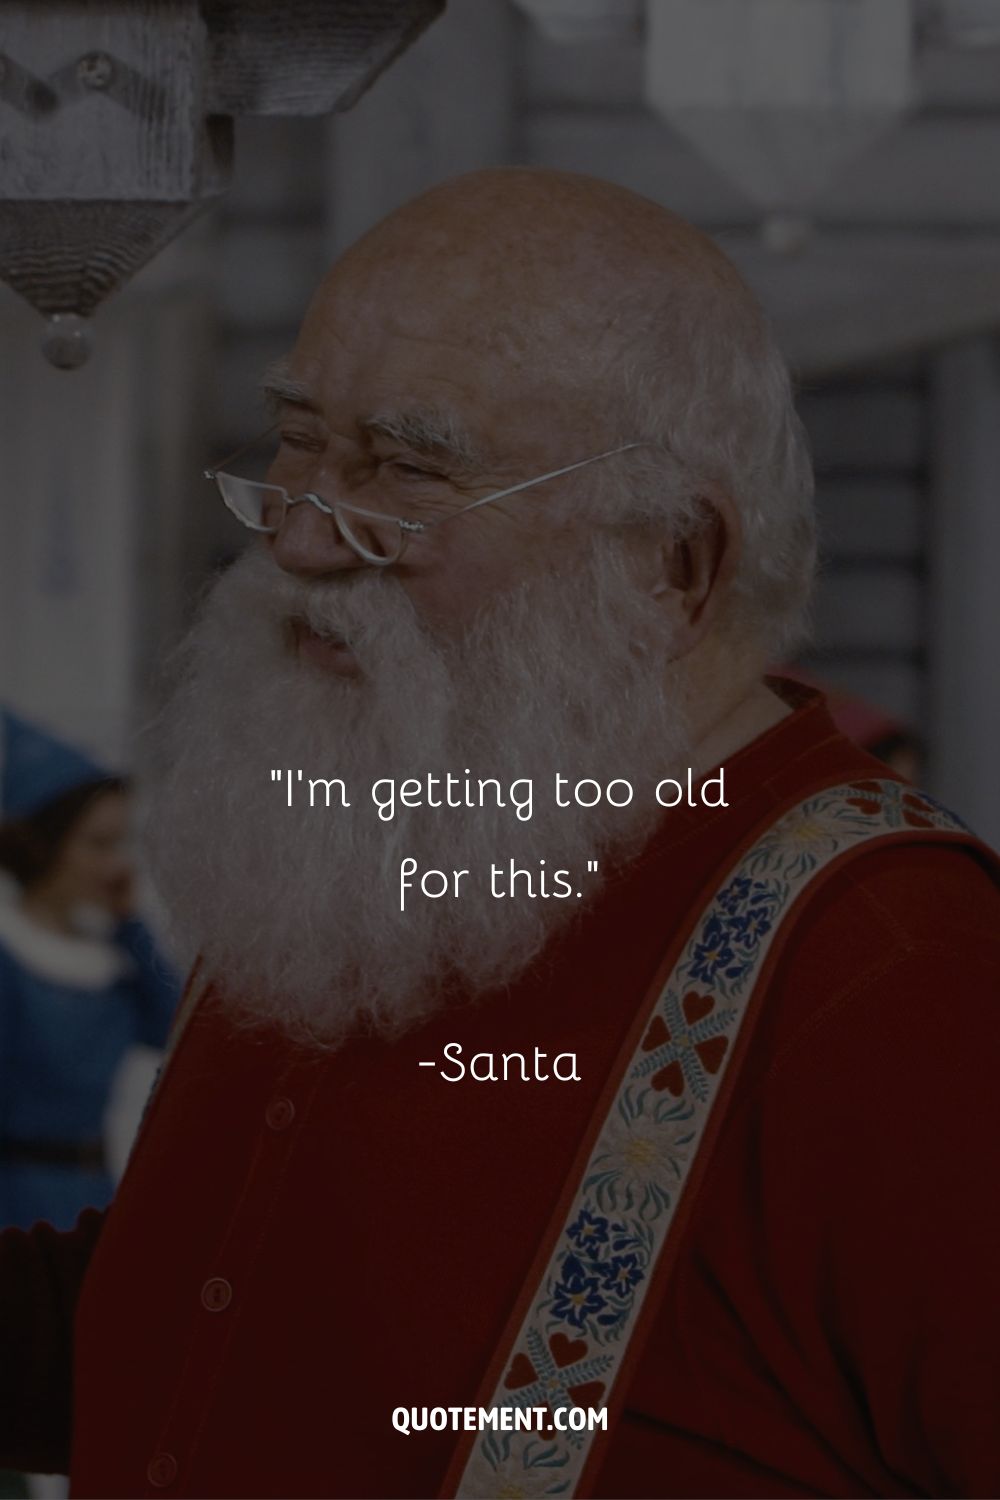 Santa Claus radiates joy in his red suit.